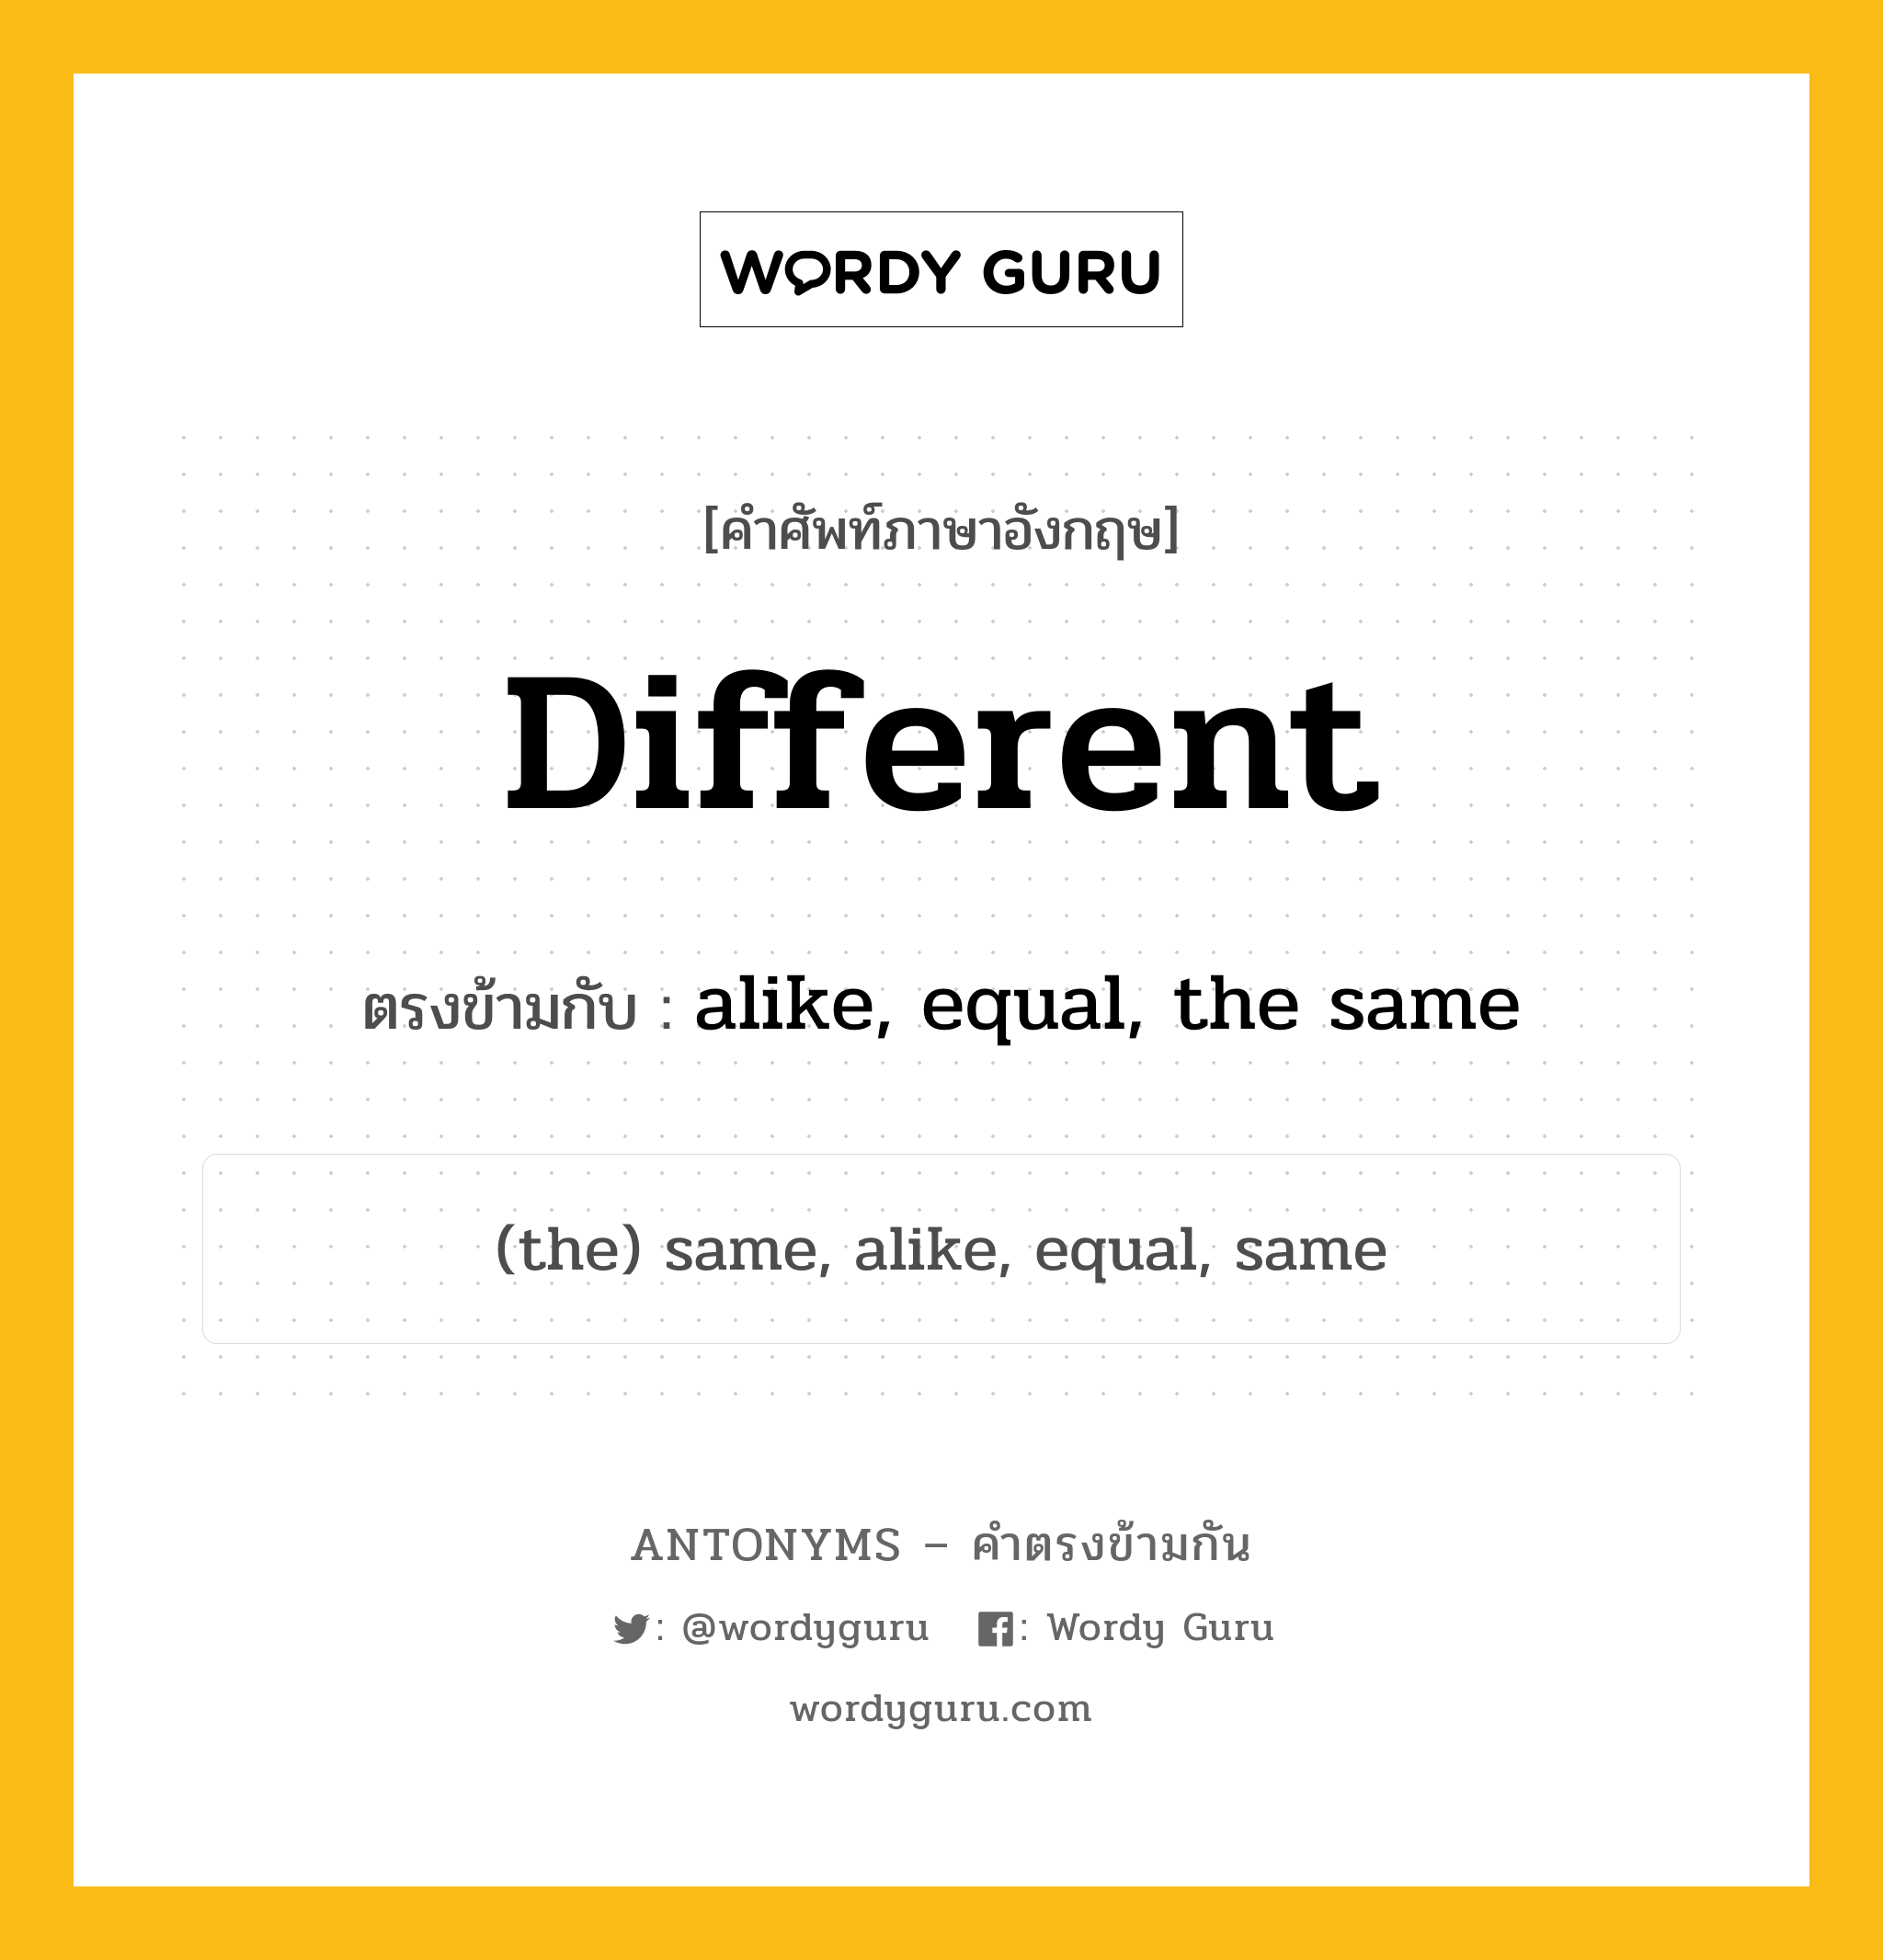 different เป็นคำตรงข้ามกับคำไหนบ้าง?, คำศัพท์ภาษาอังกฤษ different ตรงข้ามกับ alike, equal, the same หมวด alike, equal, the same